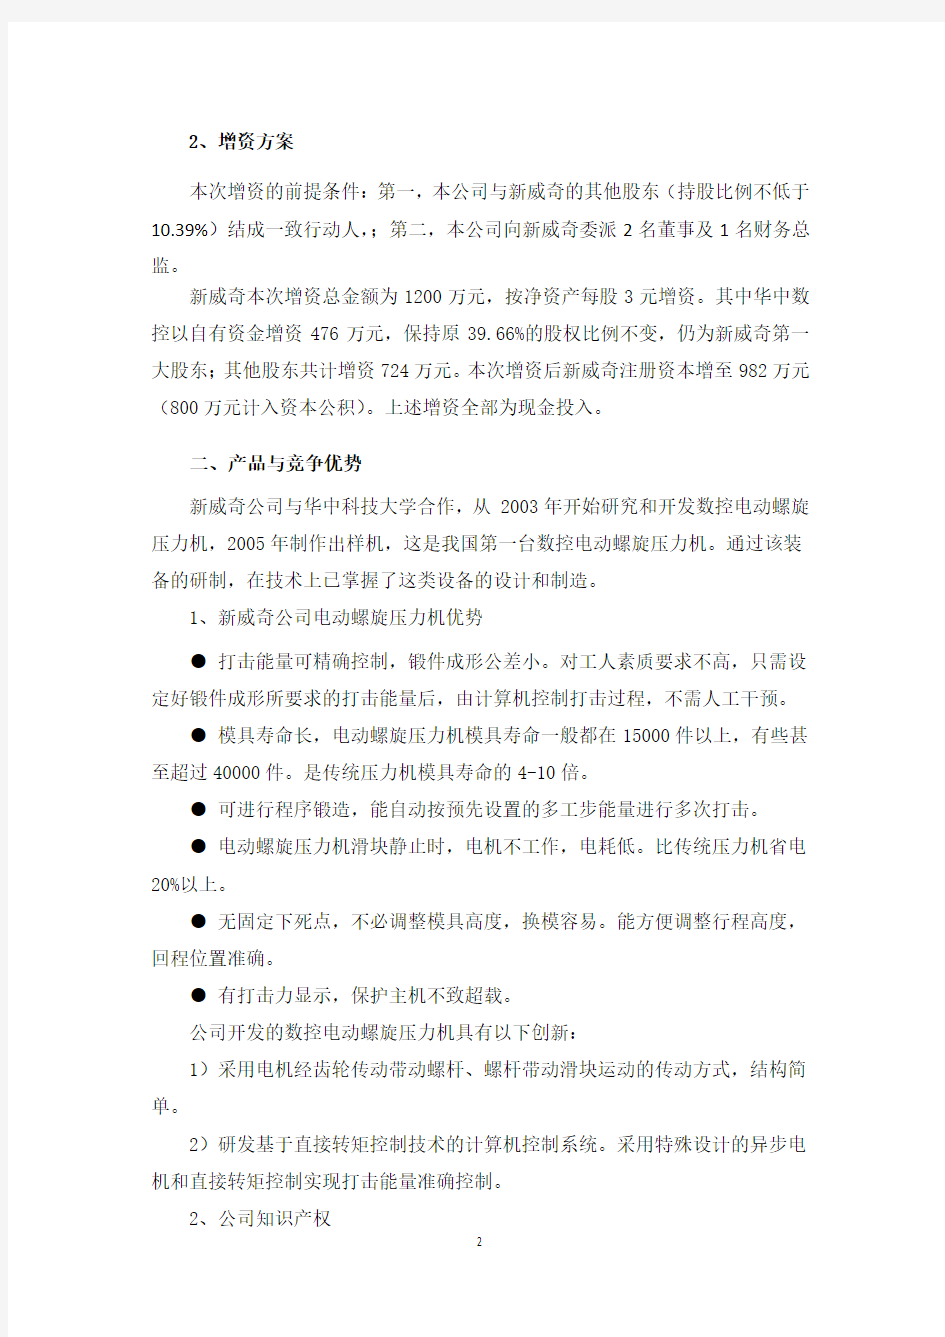 武汉新威奇科技有限公司增资项目分析报告